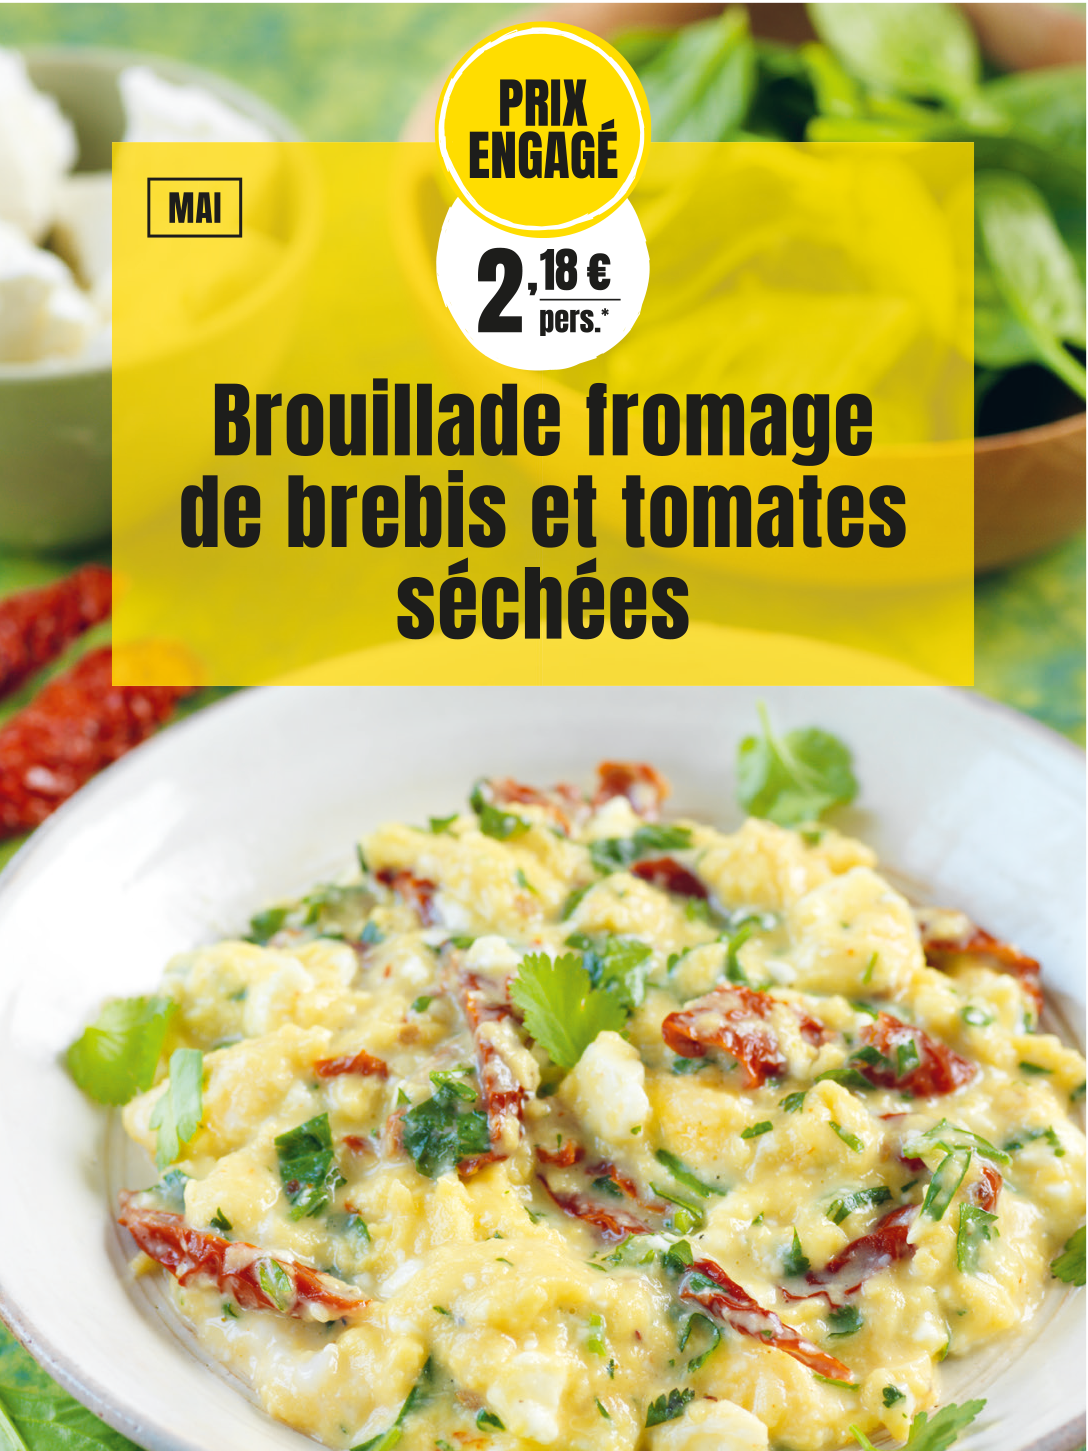 Prix engagés : Brouillade au fromage de brebis et tomates séchées : 2,18 € par personne